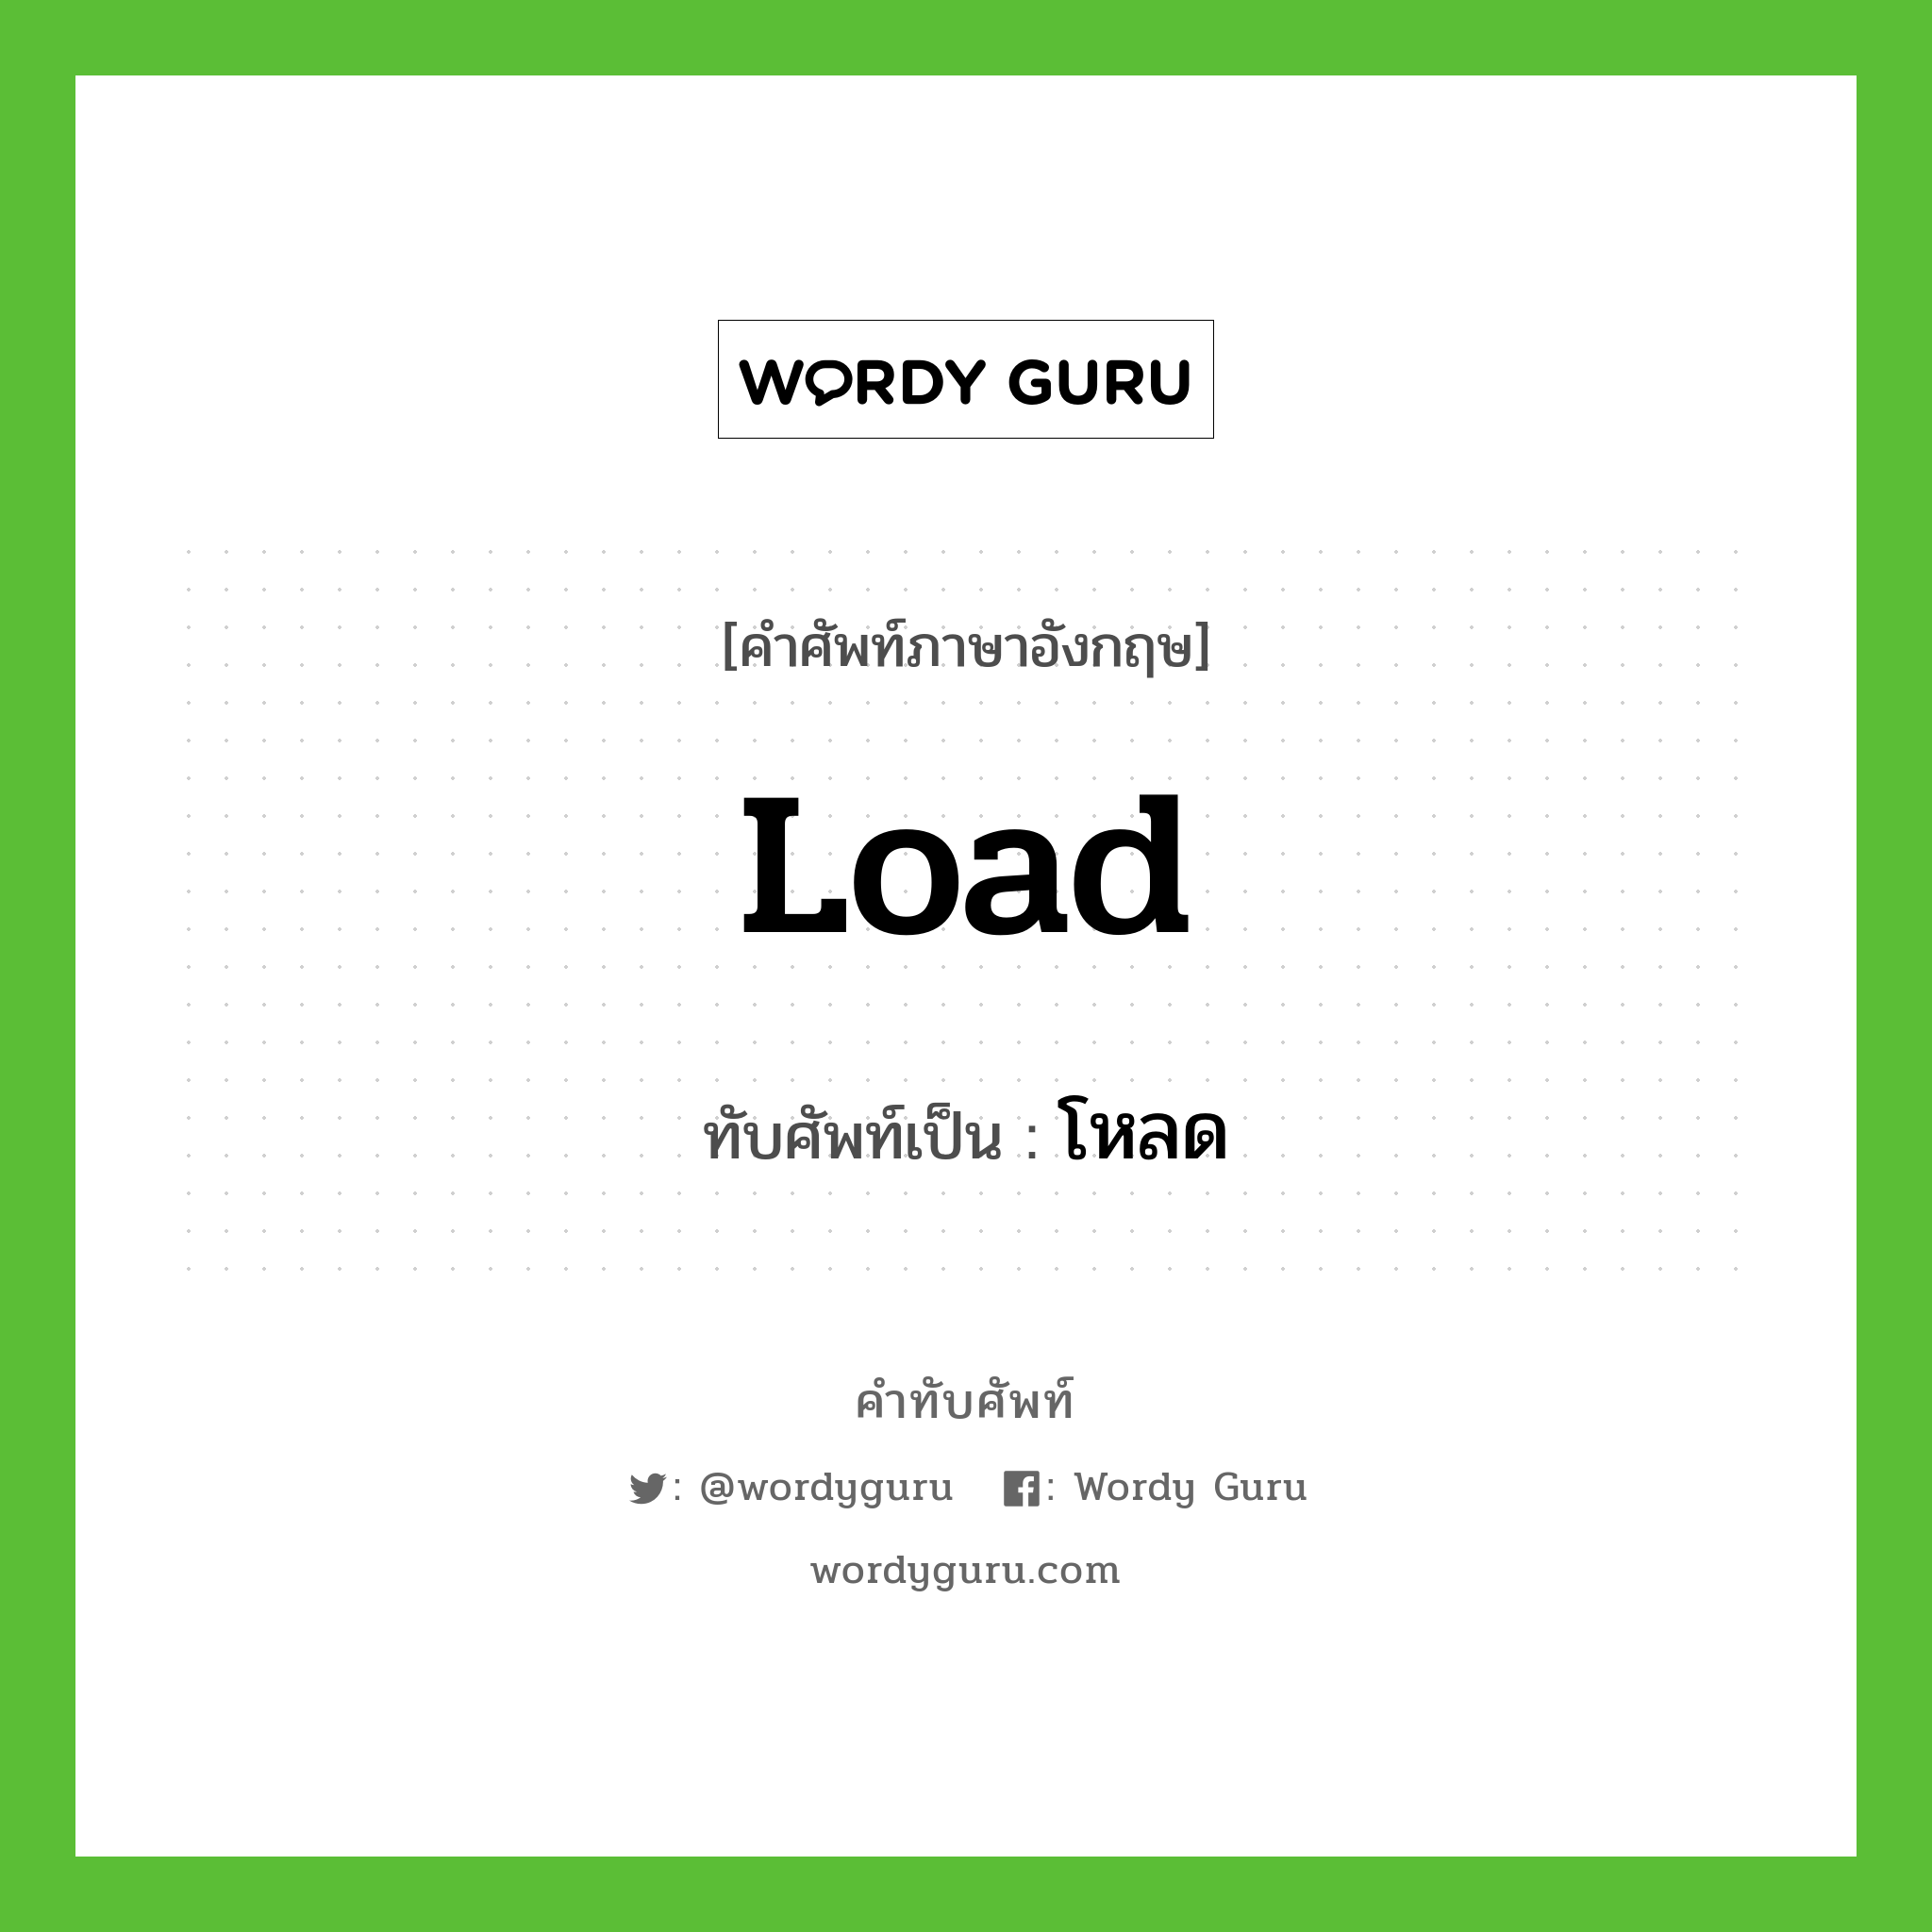 load เขียนเป็นคำไทยว่าอะไร?, คำศัพท์ภาษาอังกฤษ load ทับศัพท์เป็น โหลด